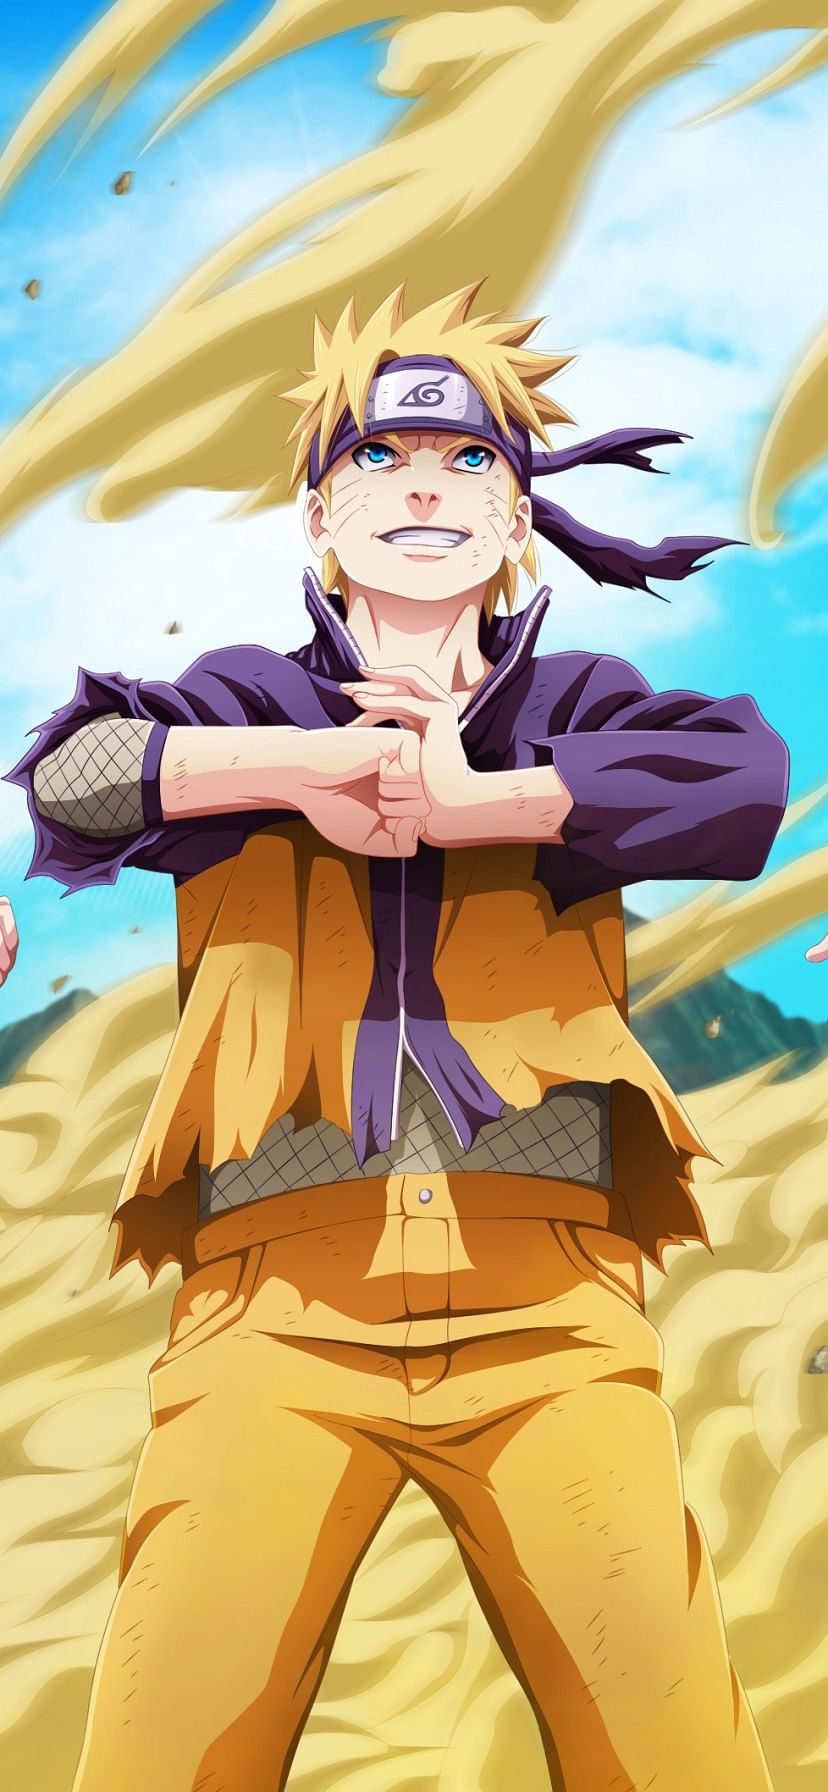 Naruto uzumaki, fictional anime character